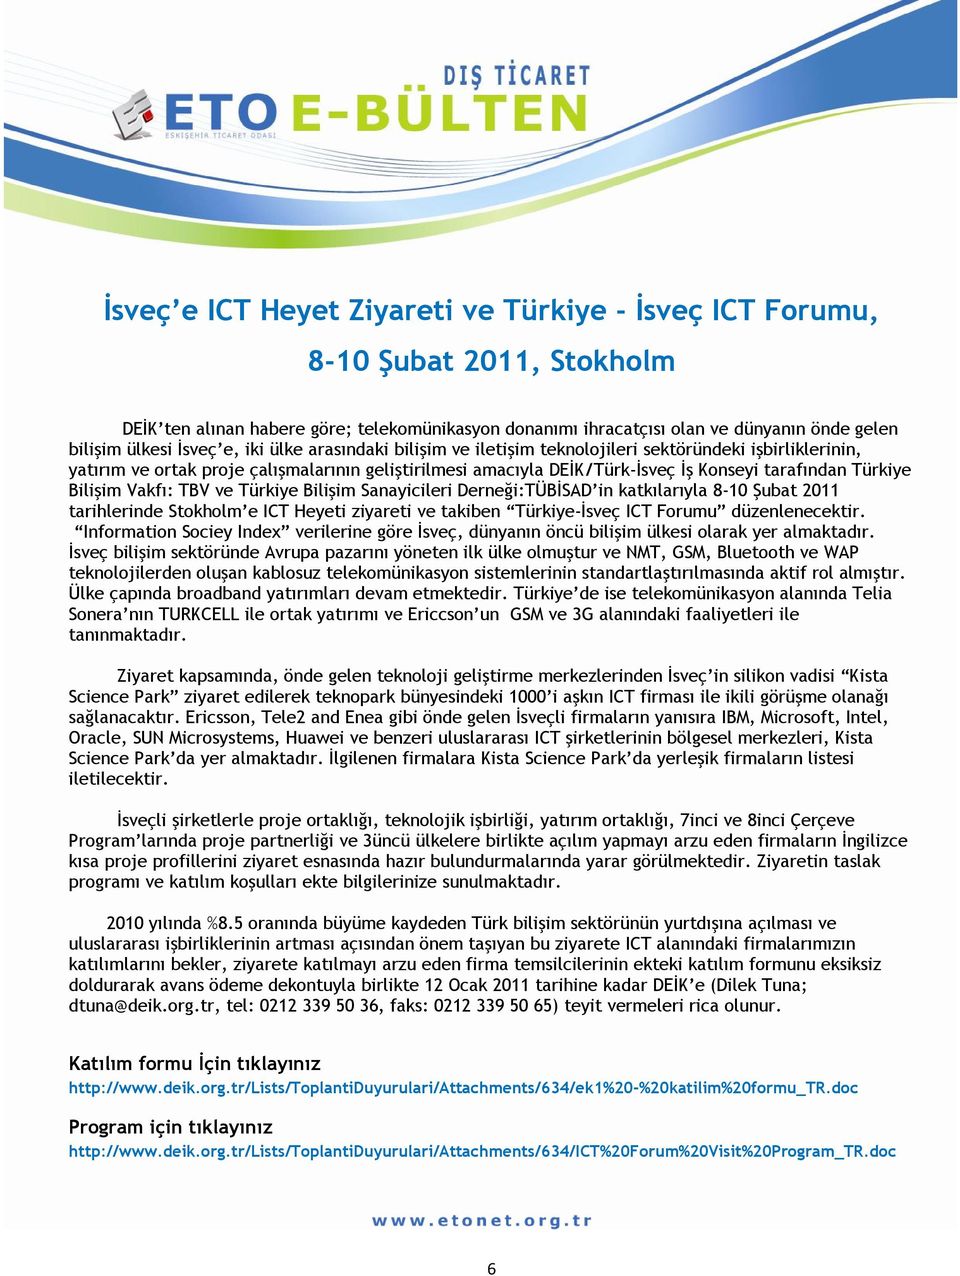 Bilişim Vakfı: TBV ve Türkiye Bilişim Sanayicileri Derneği:TÜBİSAD in katkılarıyla 8-10 Şubat 2011 tarihlerinde Stokholm e ICT Heyeti ziyareti ve takiben Türkiye-İsveç ICT Forumu düzenlenecektir.